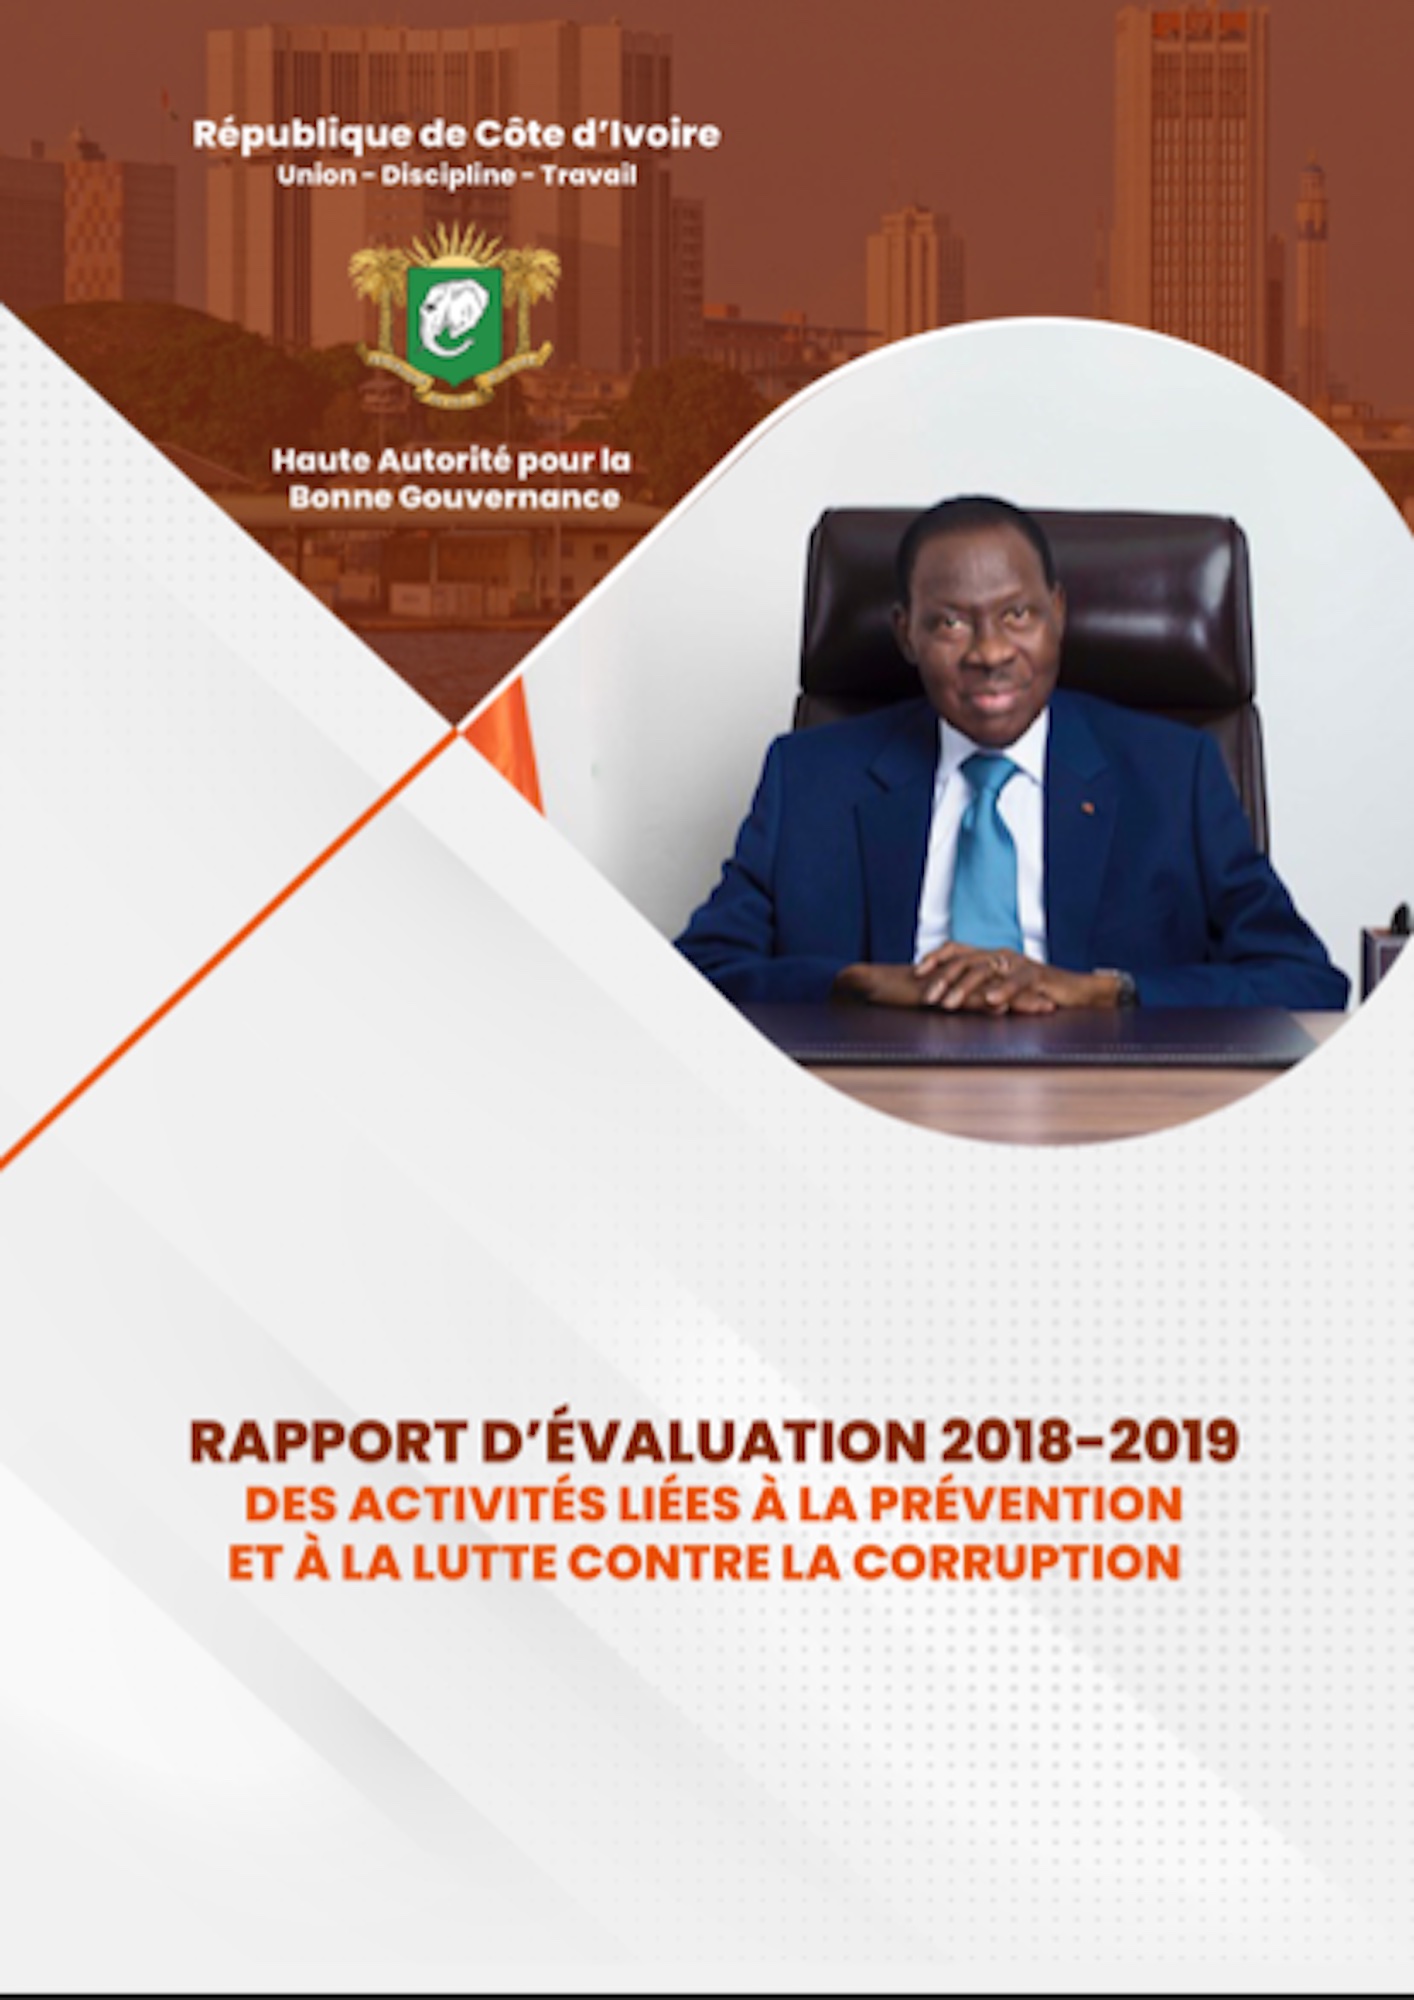 Rapport d'Evaluation de la HABG 2018-2019 des activités liées à la prévention et à la lutte contre la corruption